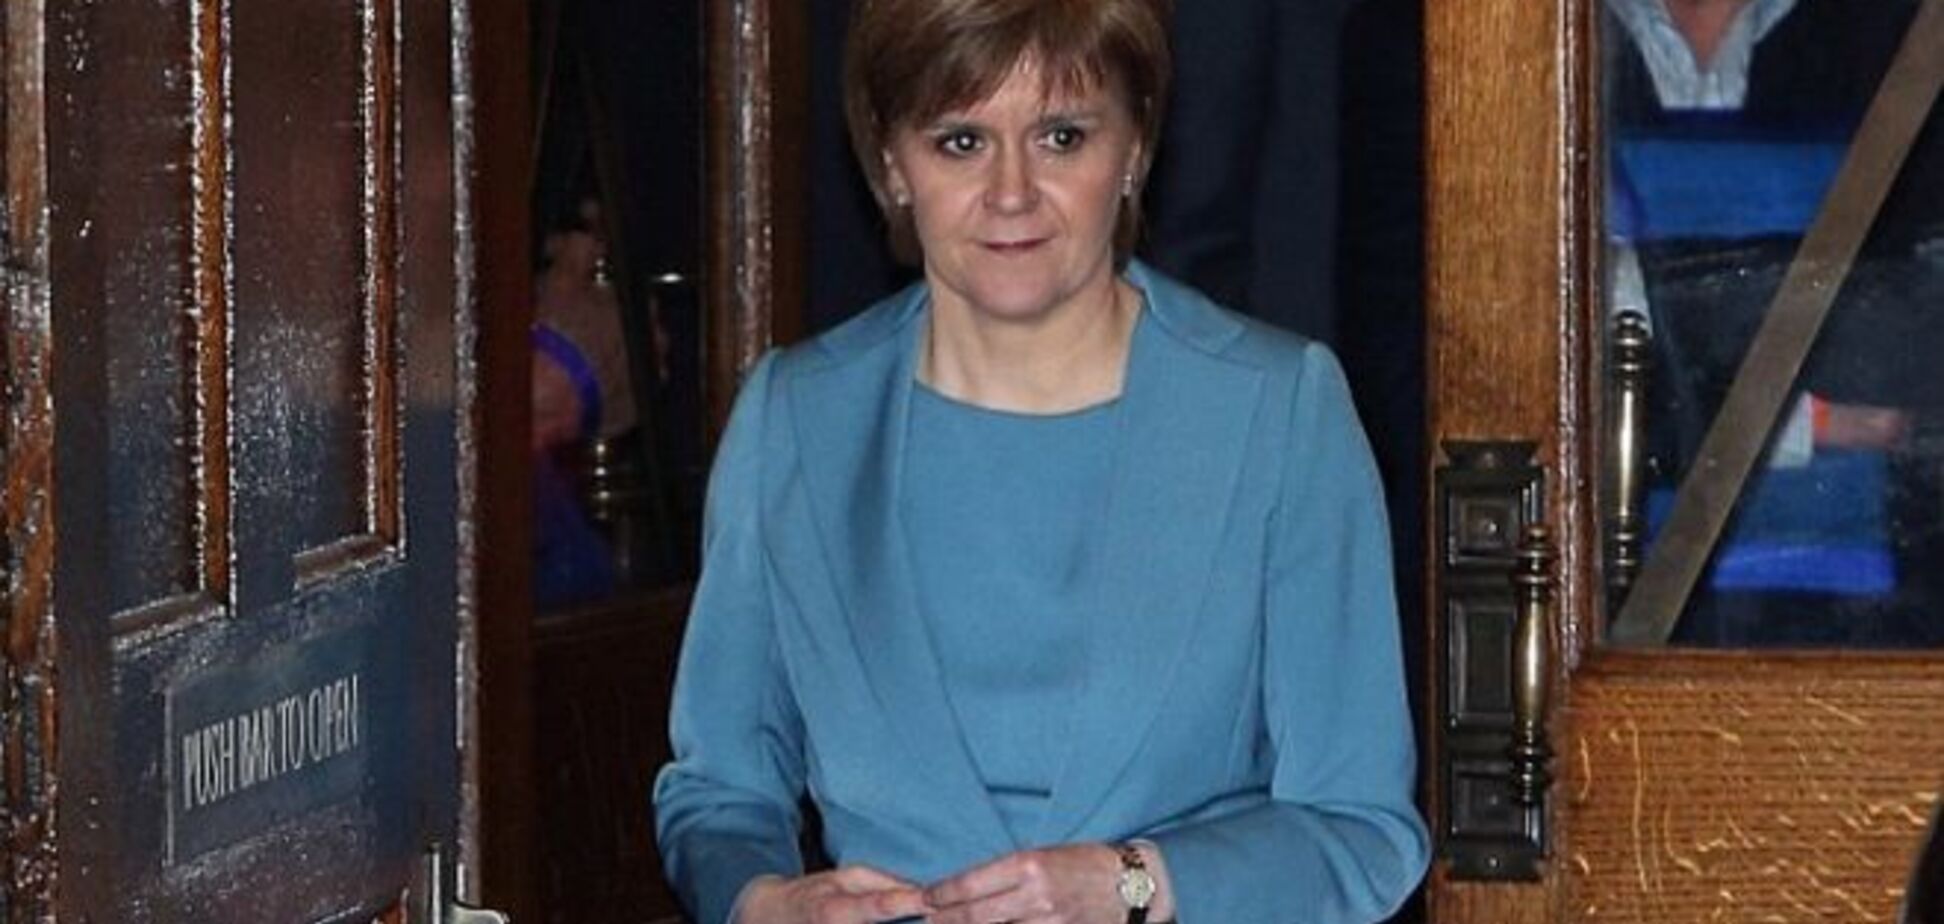 Сеть взорвали дебаты о цвете платья шотландского политика 